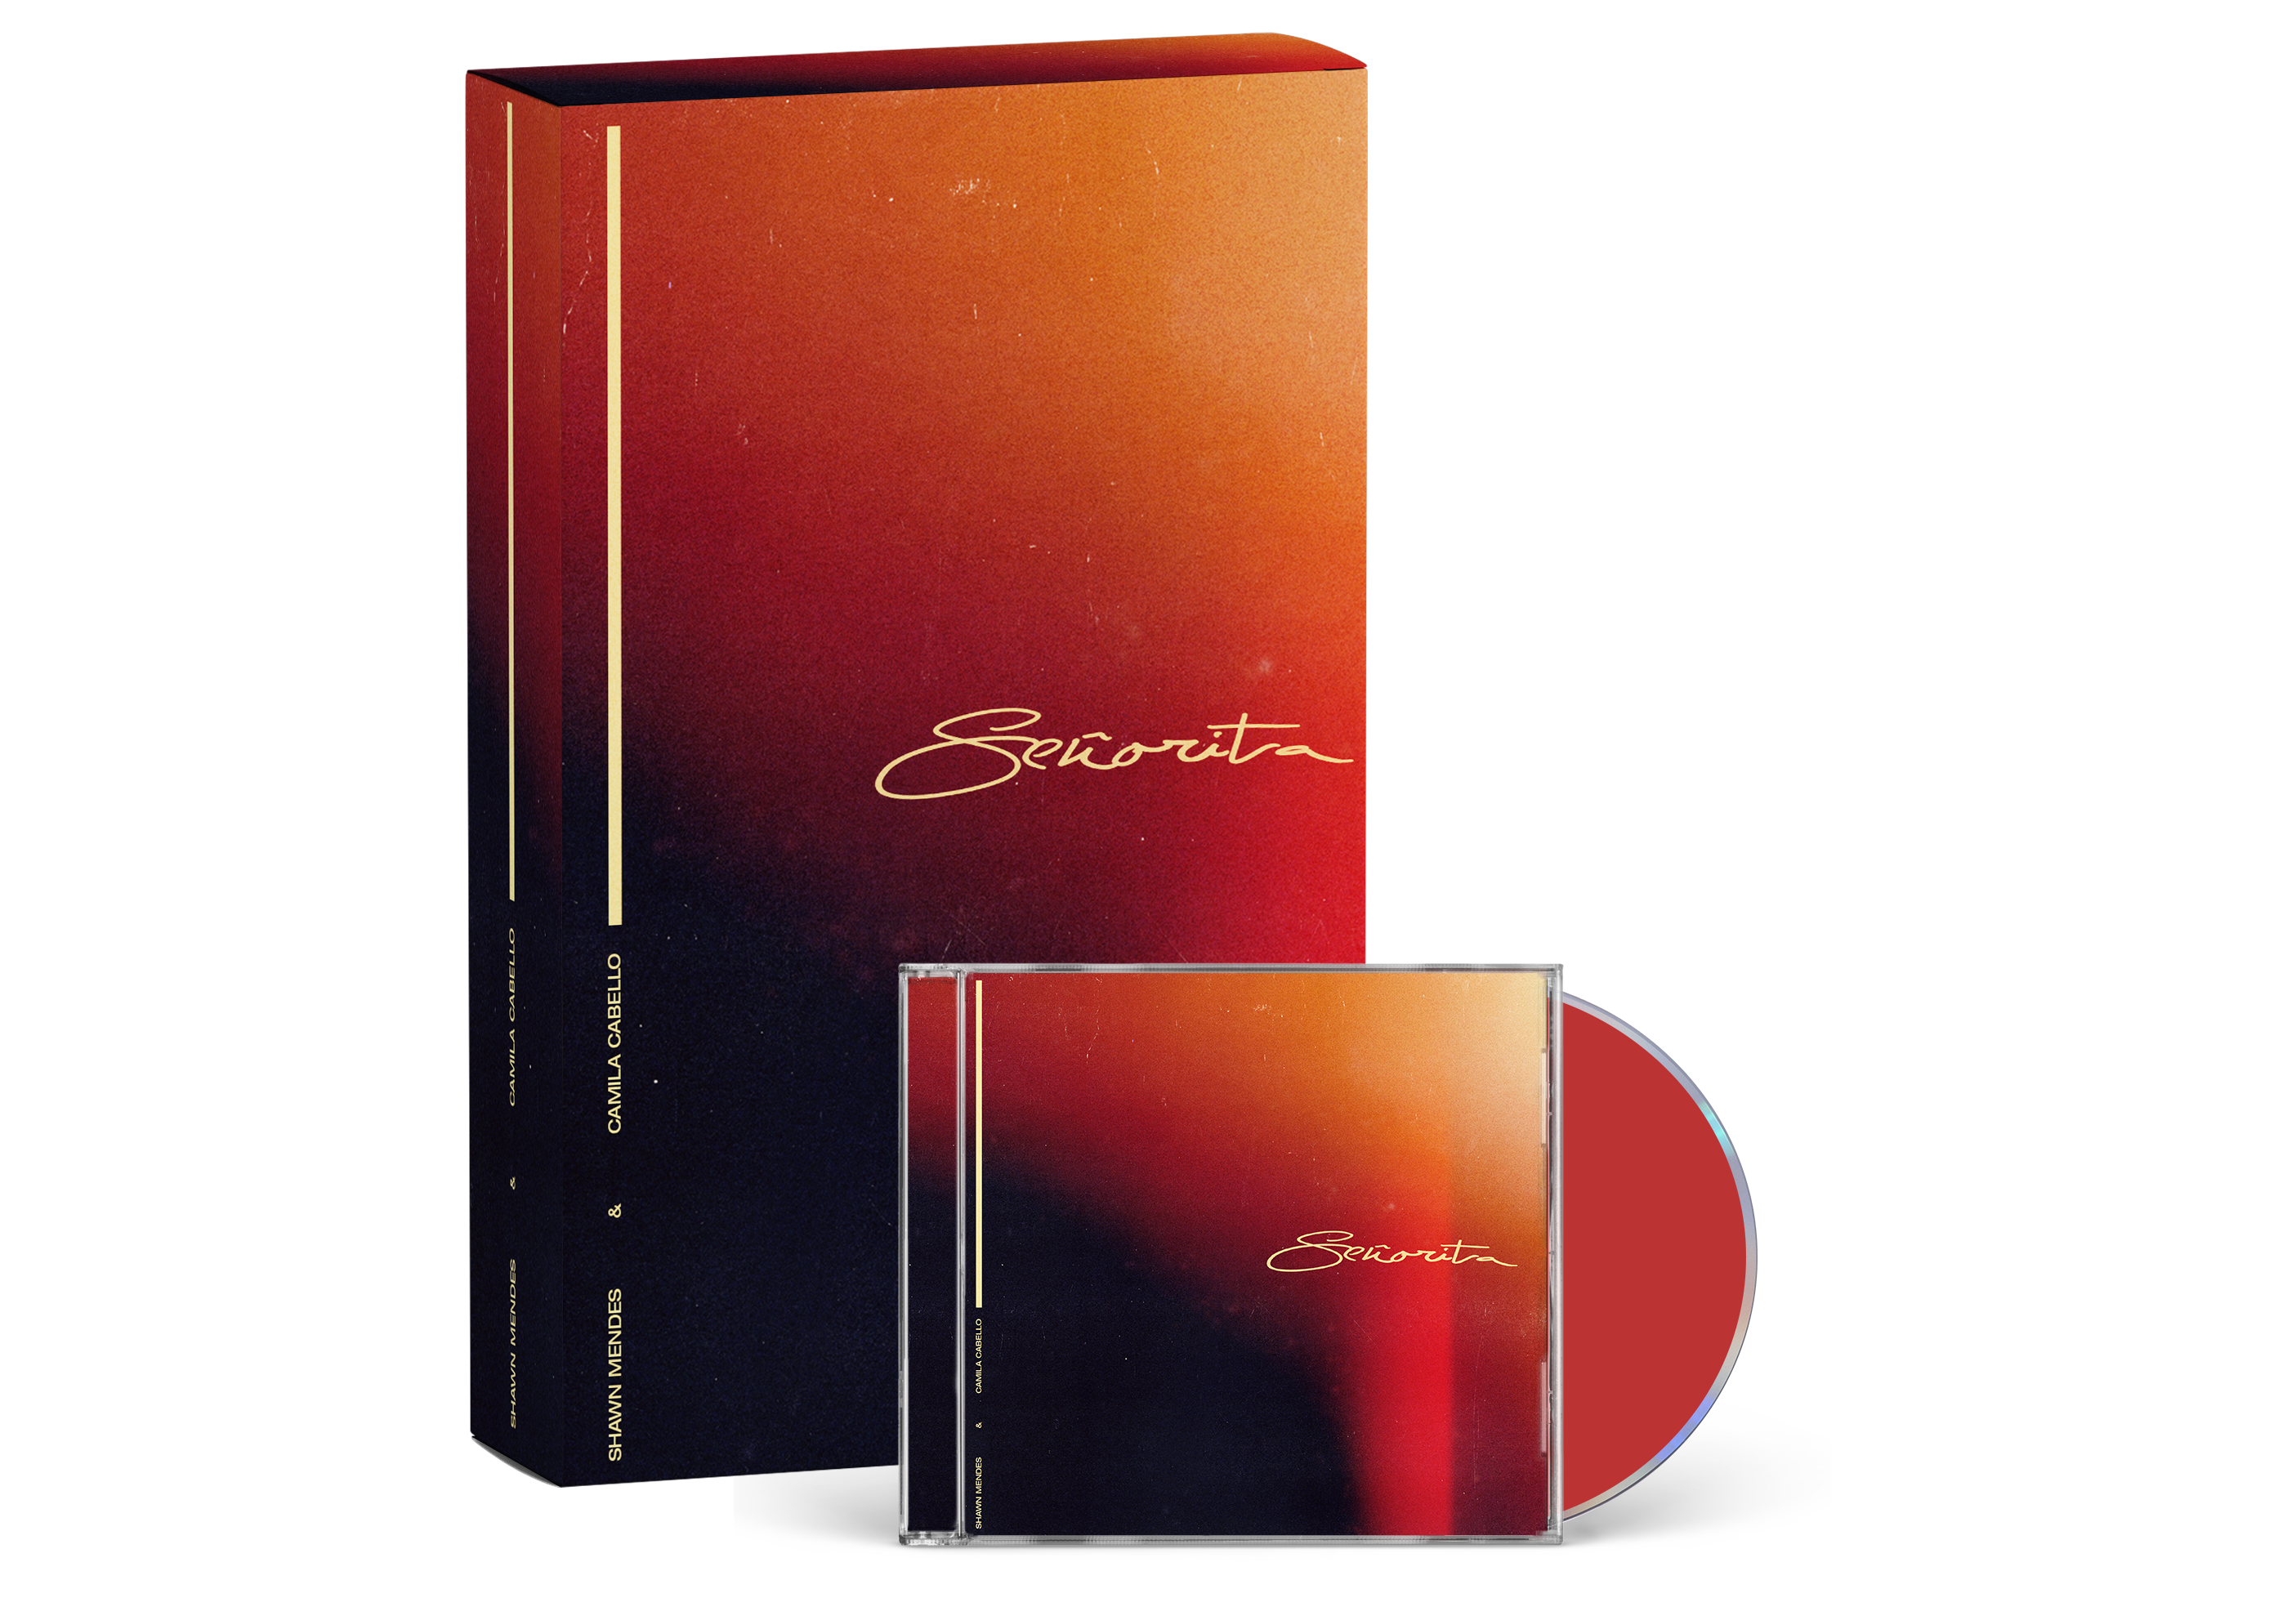 Shawn Mendes - SEÑORITA CD Single in Exclusive Packaging